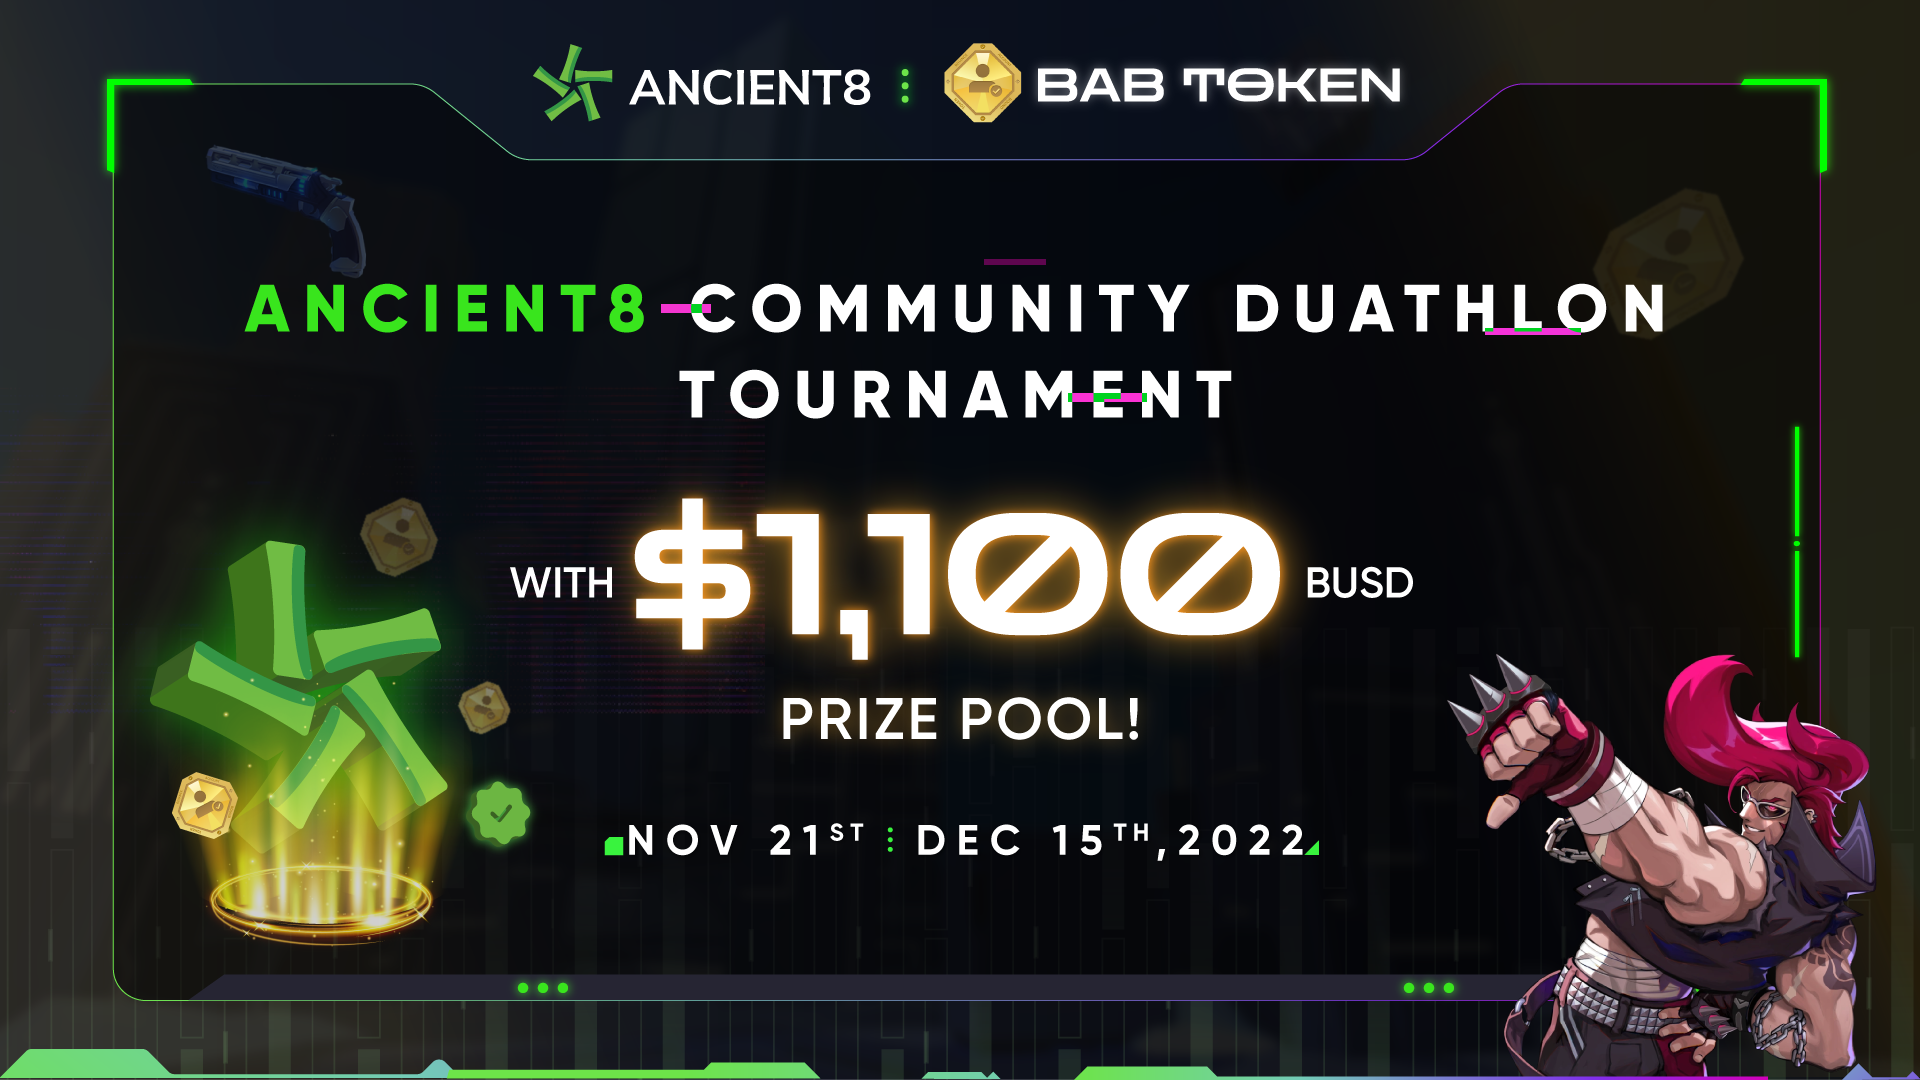 Ancient8 Community Duathlon” Tournament - Ancient8 x BAB Token - Join Duathlon Tournament with $1,100 BUSD Prize Pool!